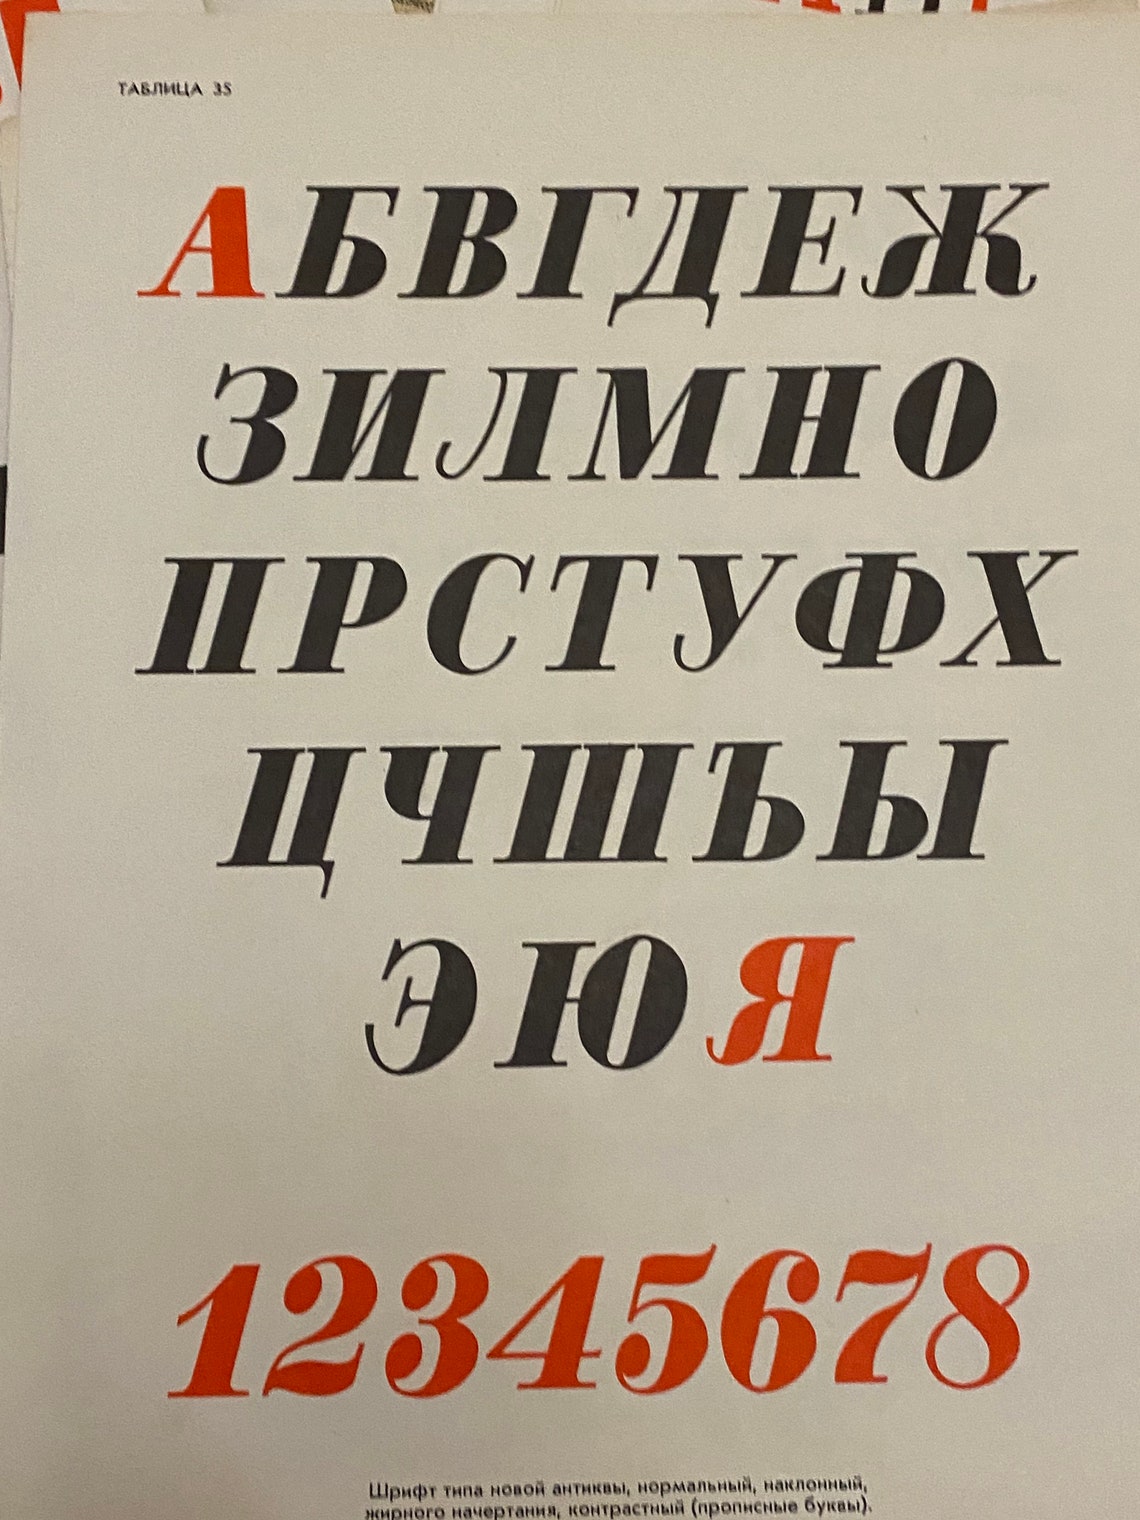 Soviet Propaganda Poster Fonts in Agitation Russian Font | Etsy